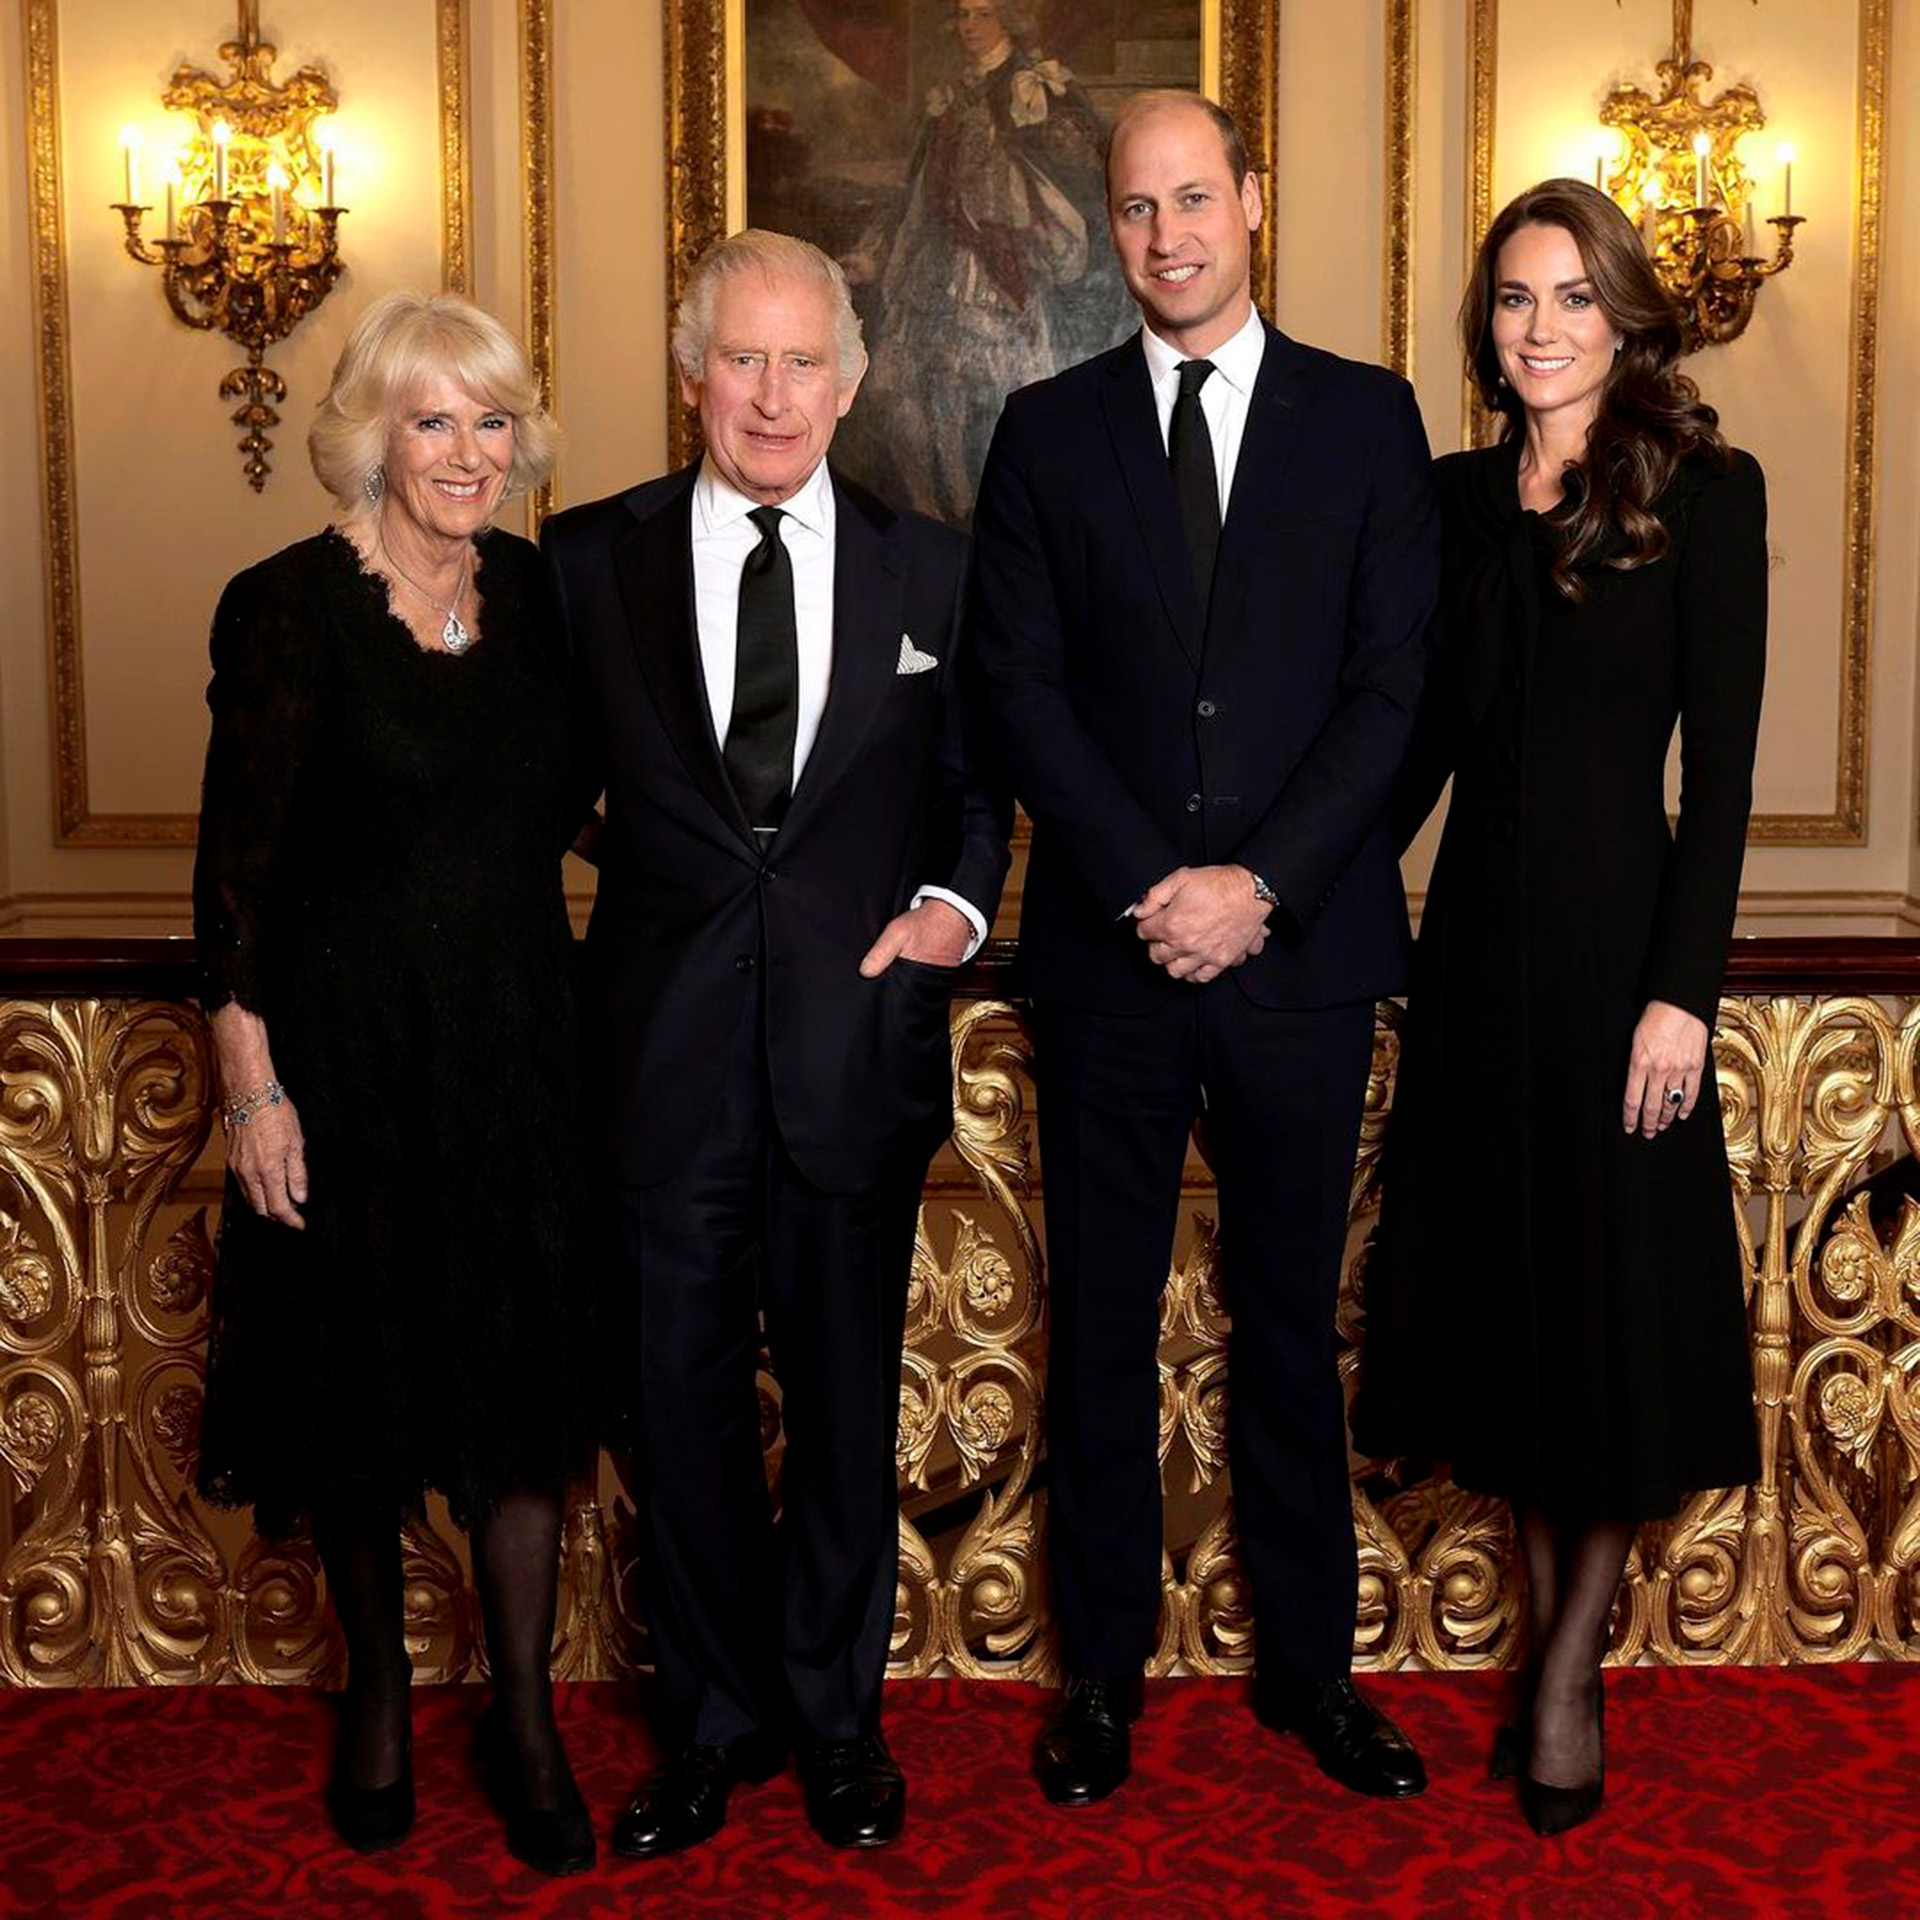 El rey Carlos II y la reina consorte con Sus Altezas Reales el príncipe y la princesa de Gales. Una fotografía tomada en el Palacio de Buckingham el 18 de septiembre (Crédito: @chrisjacksongetty)